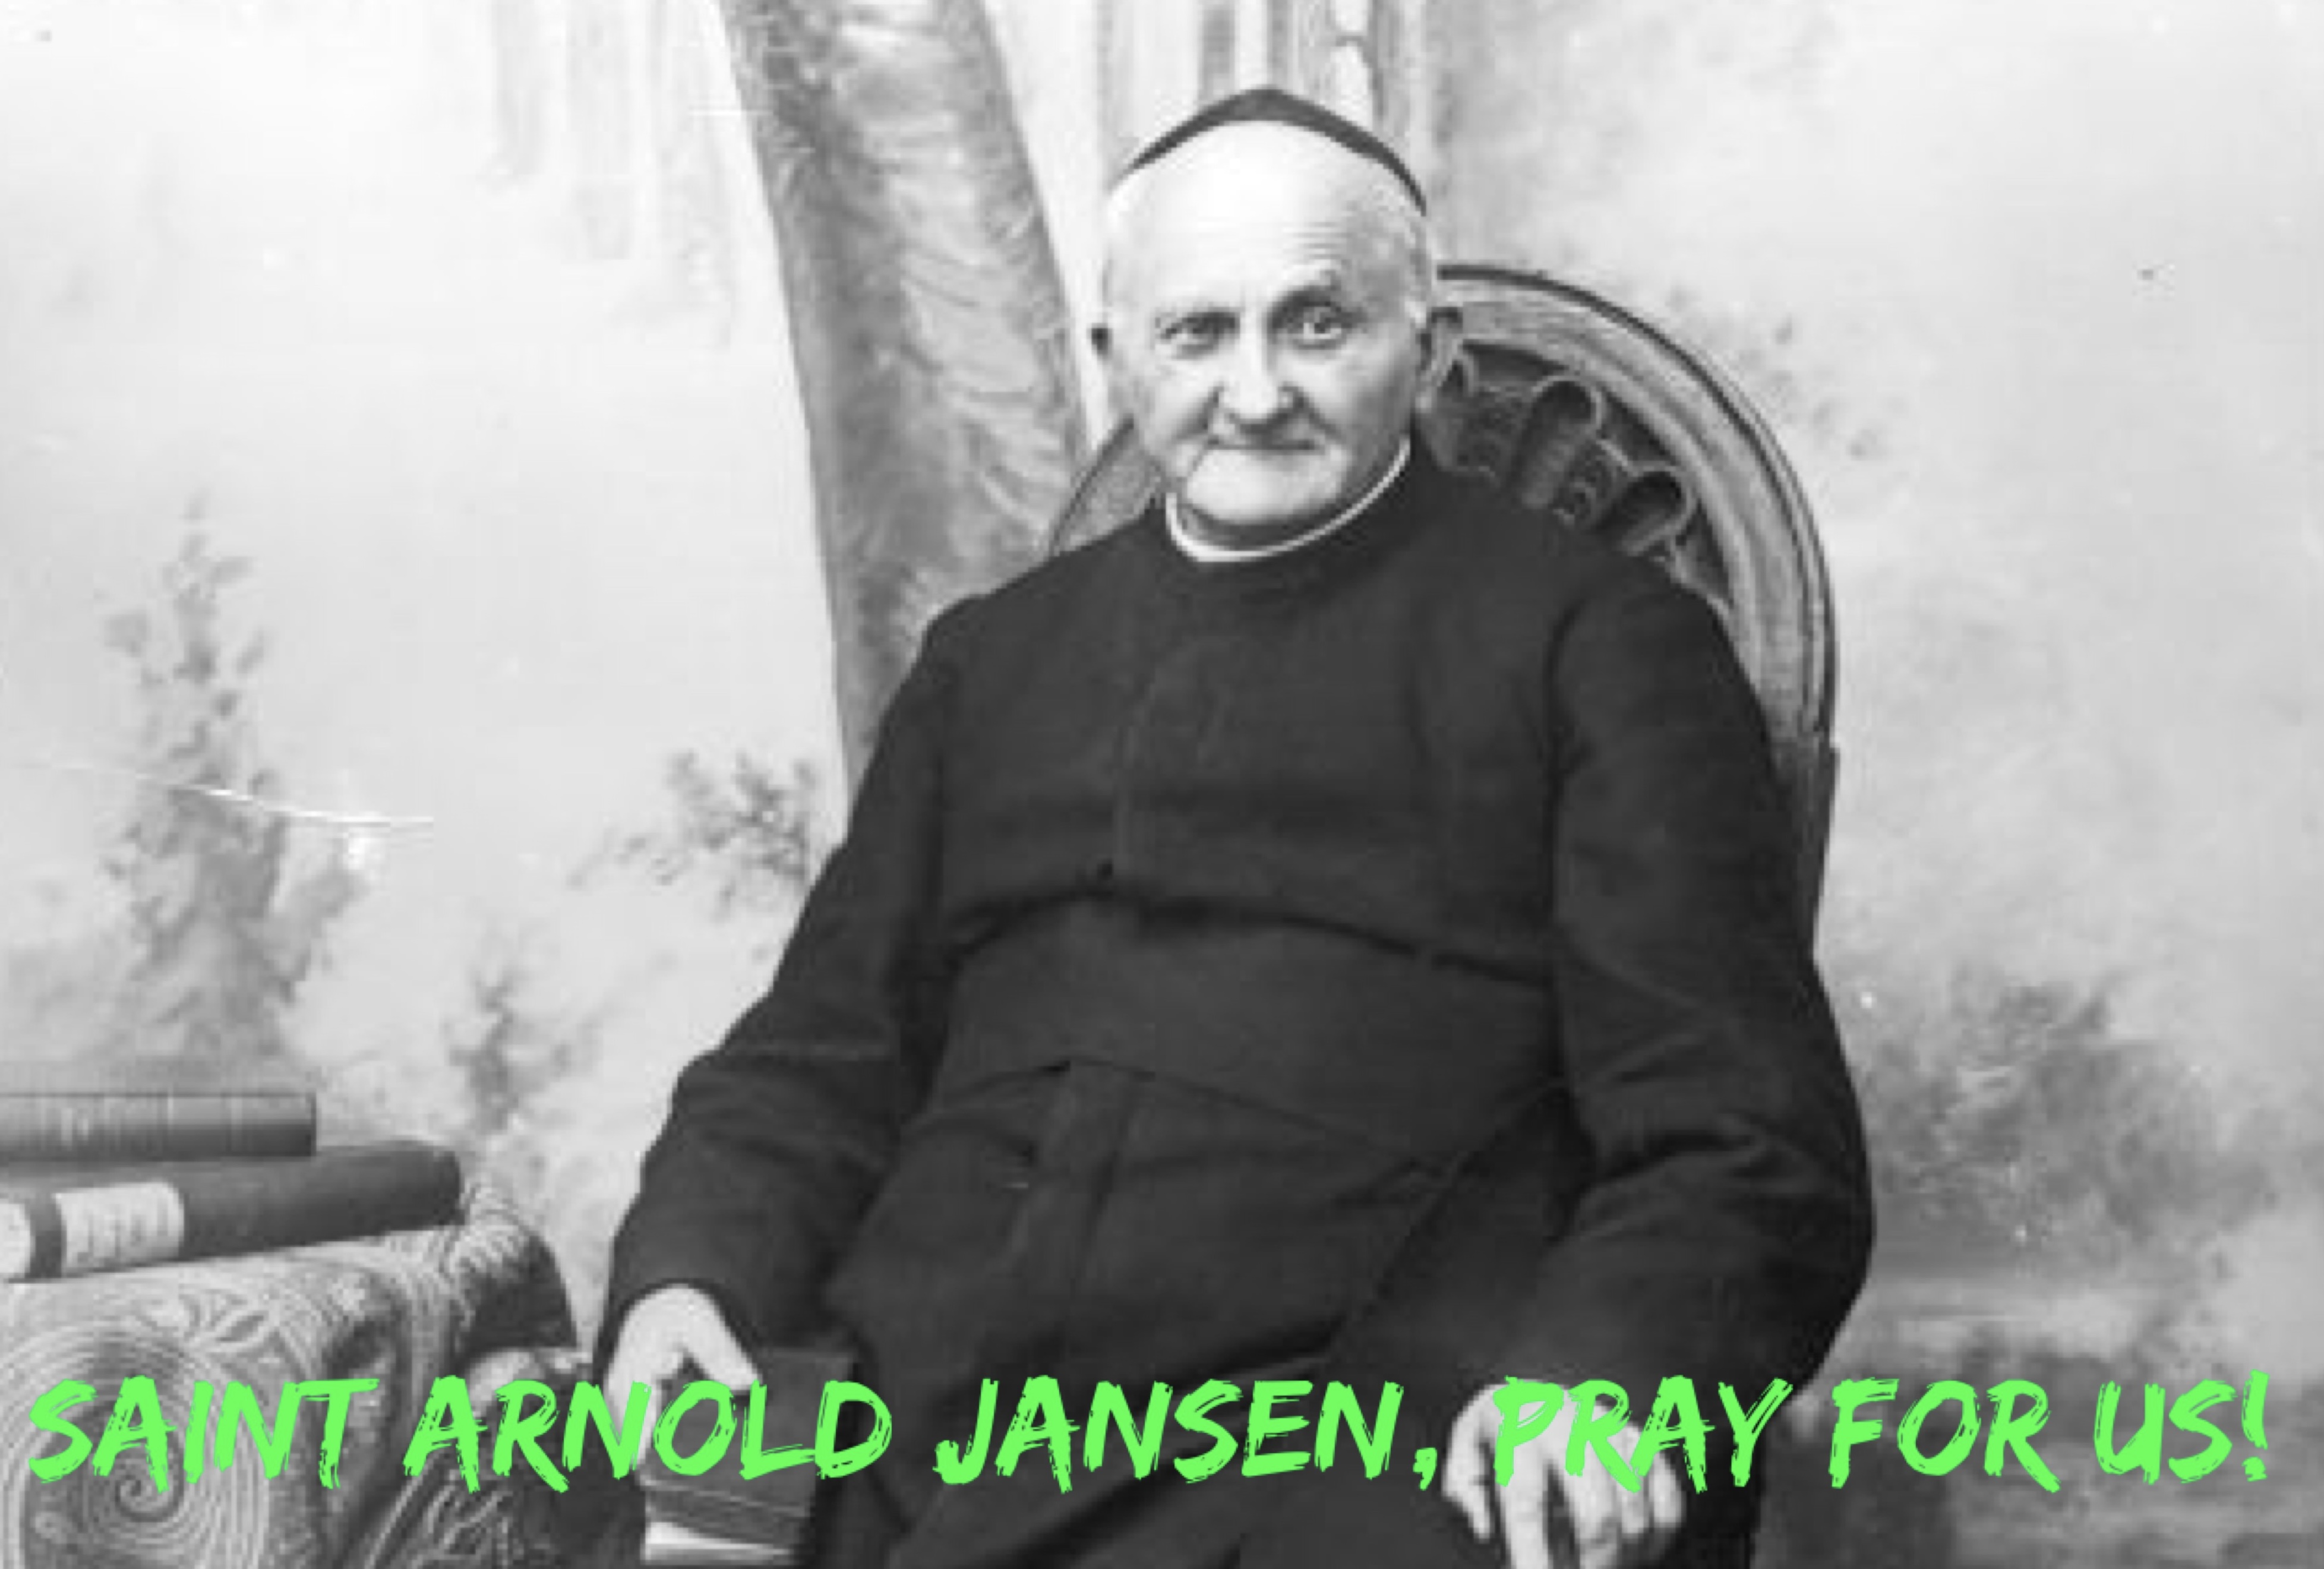 15th January - Saint Arnold Jansen